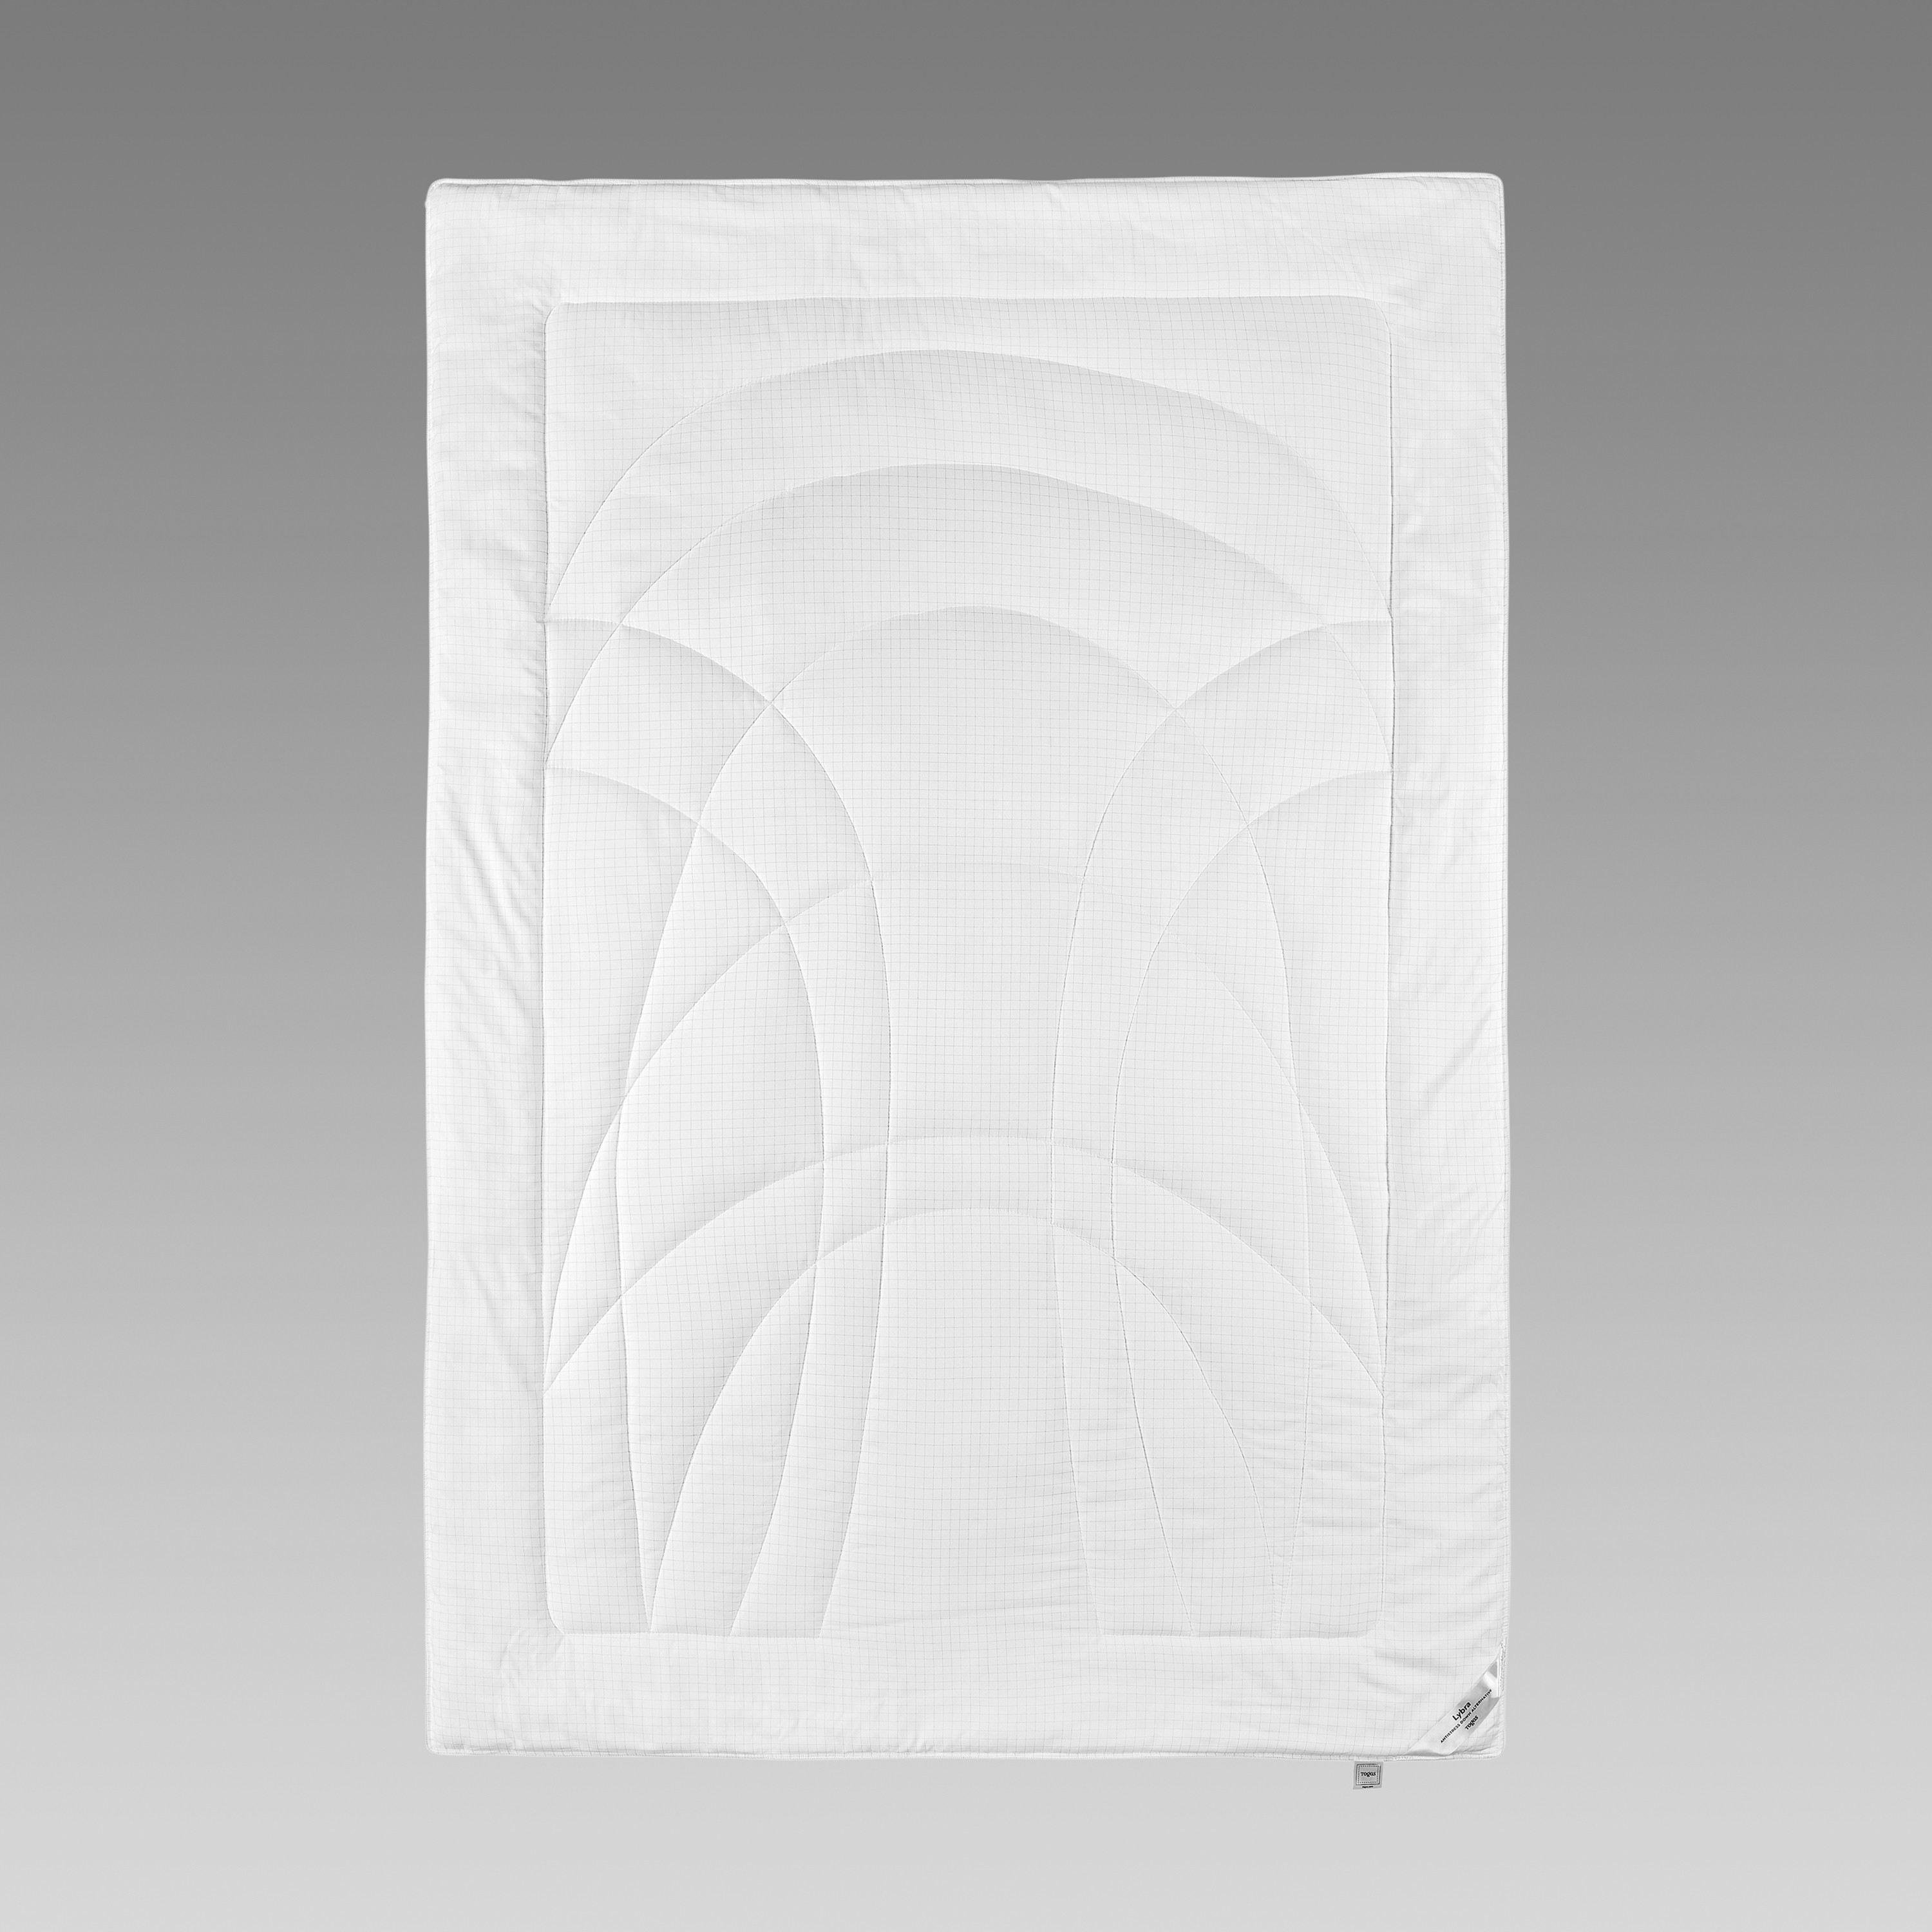 Одеяла Одеяло Либра  - Фото